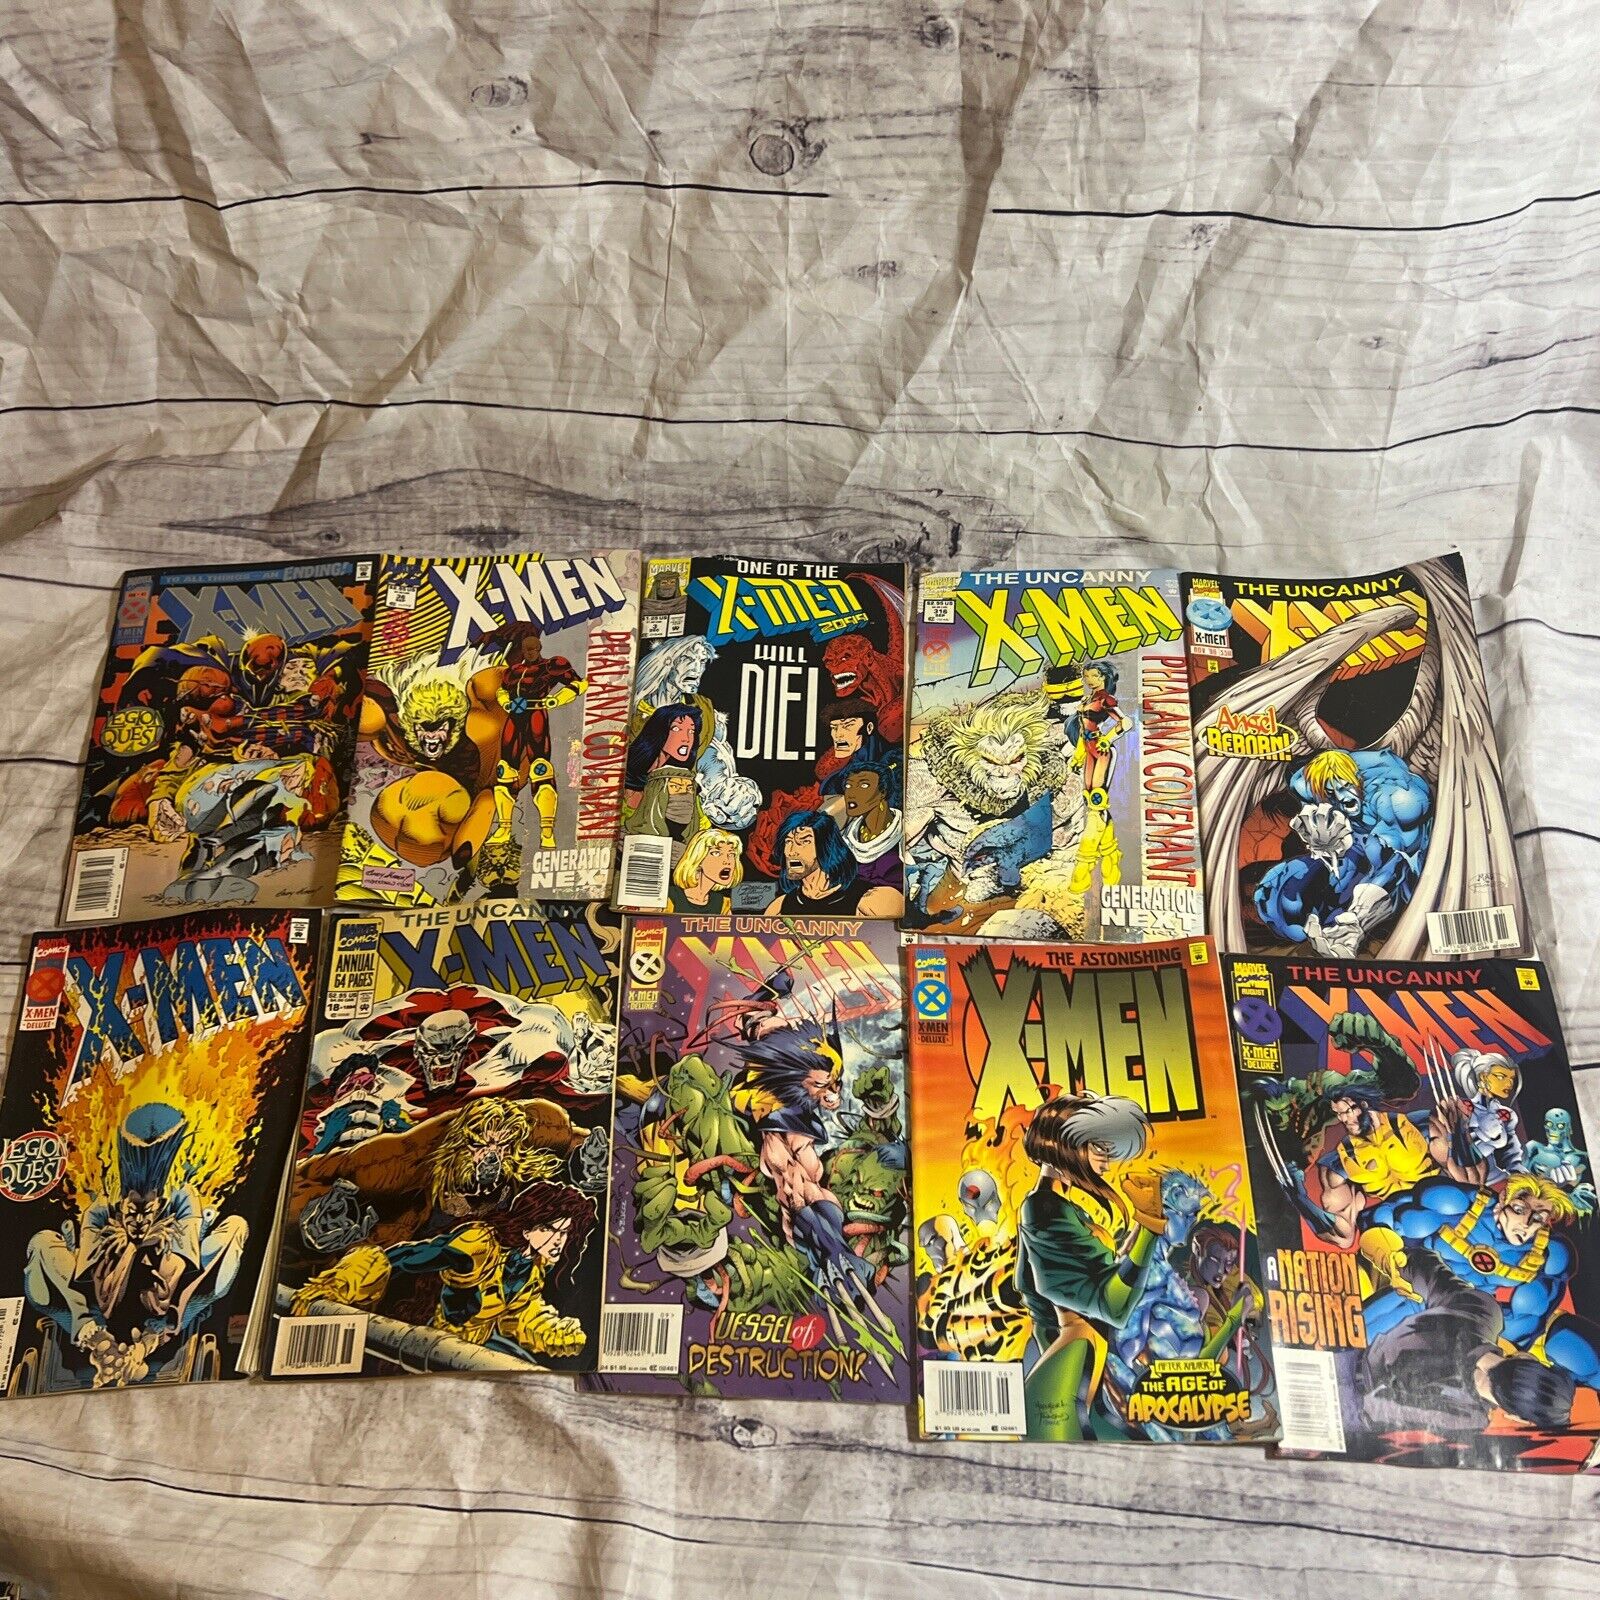 LOT OF 10 X-Men Random Comic books - No Duplicates. Includes The Uncanny Xmen